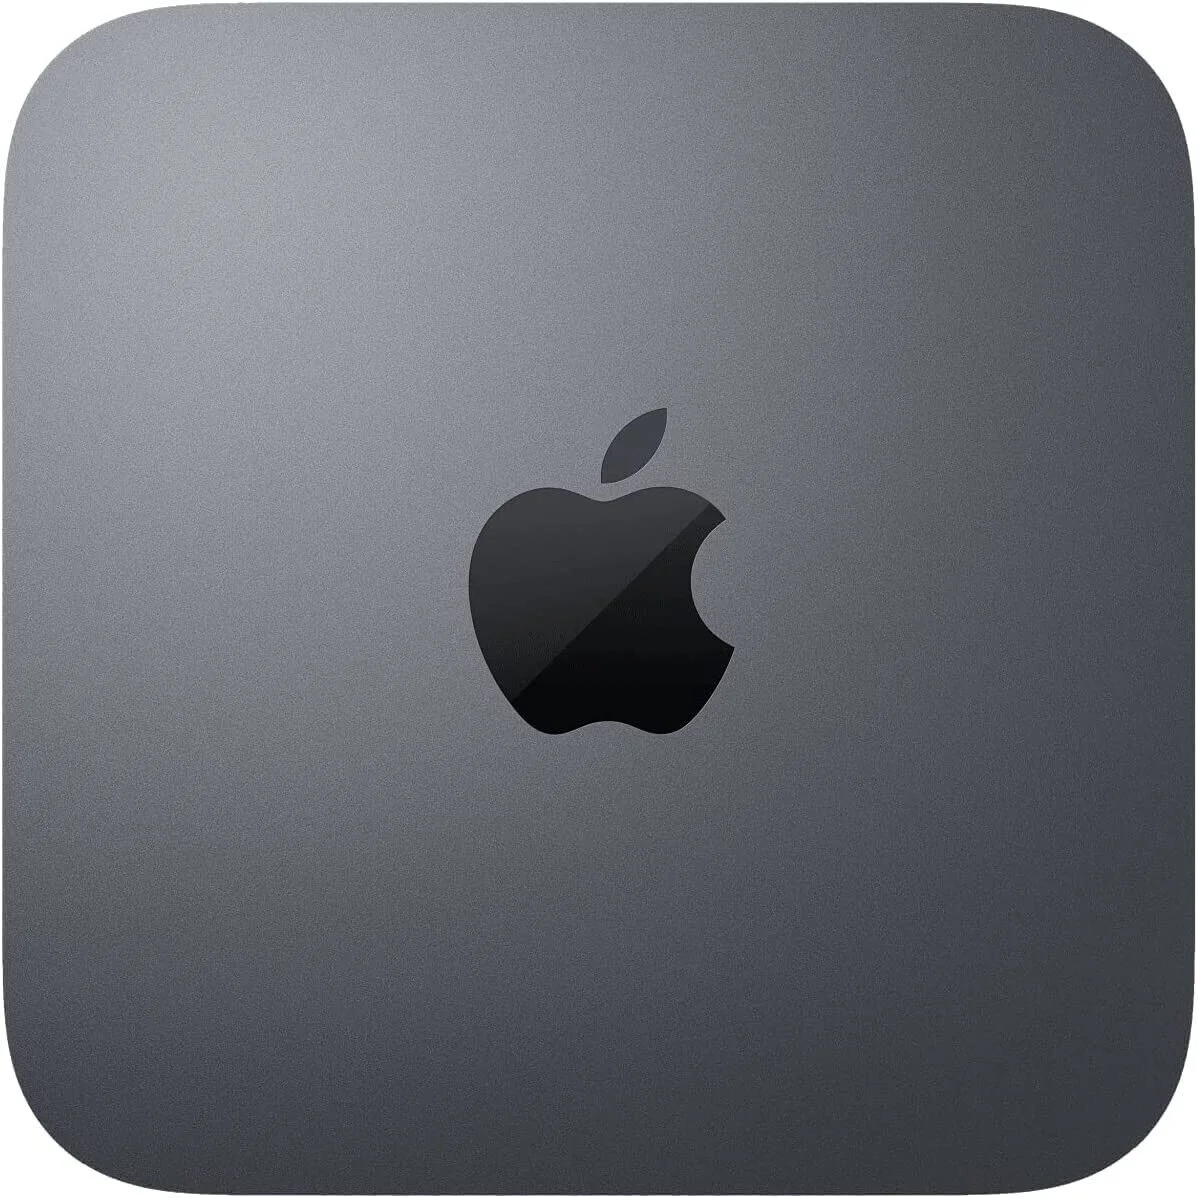 MXNG2FN A Apple Mac Mini i5-8500 Maroc 